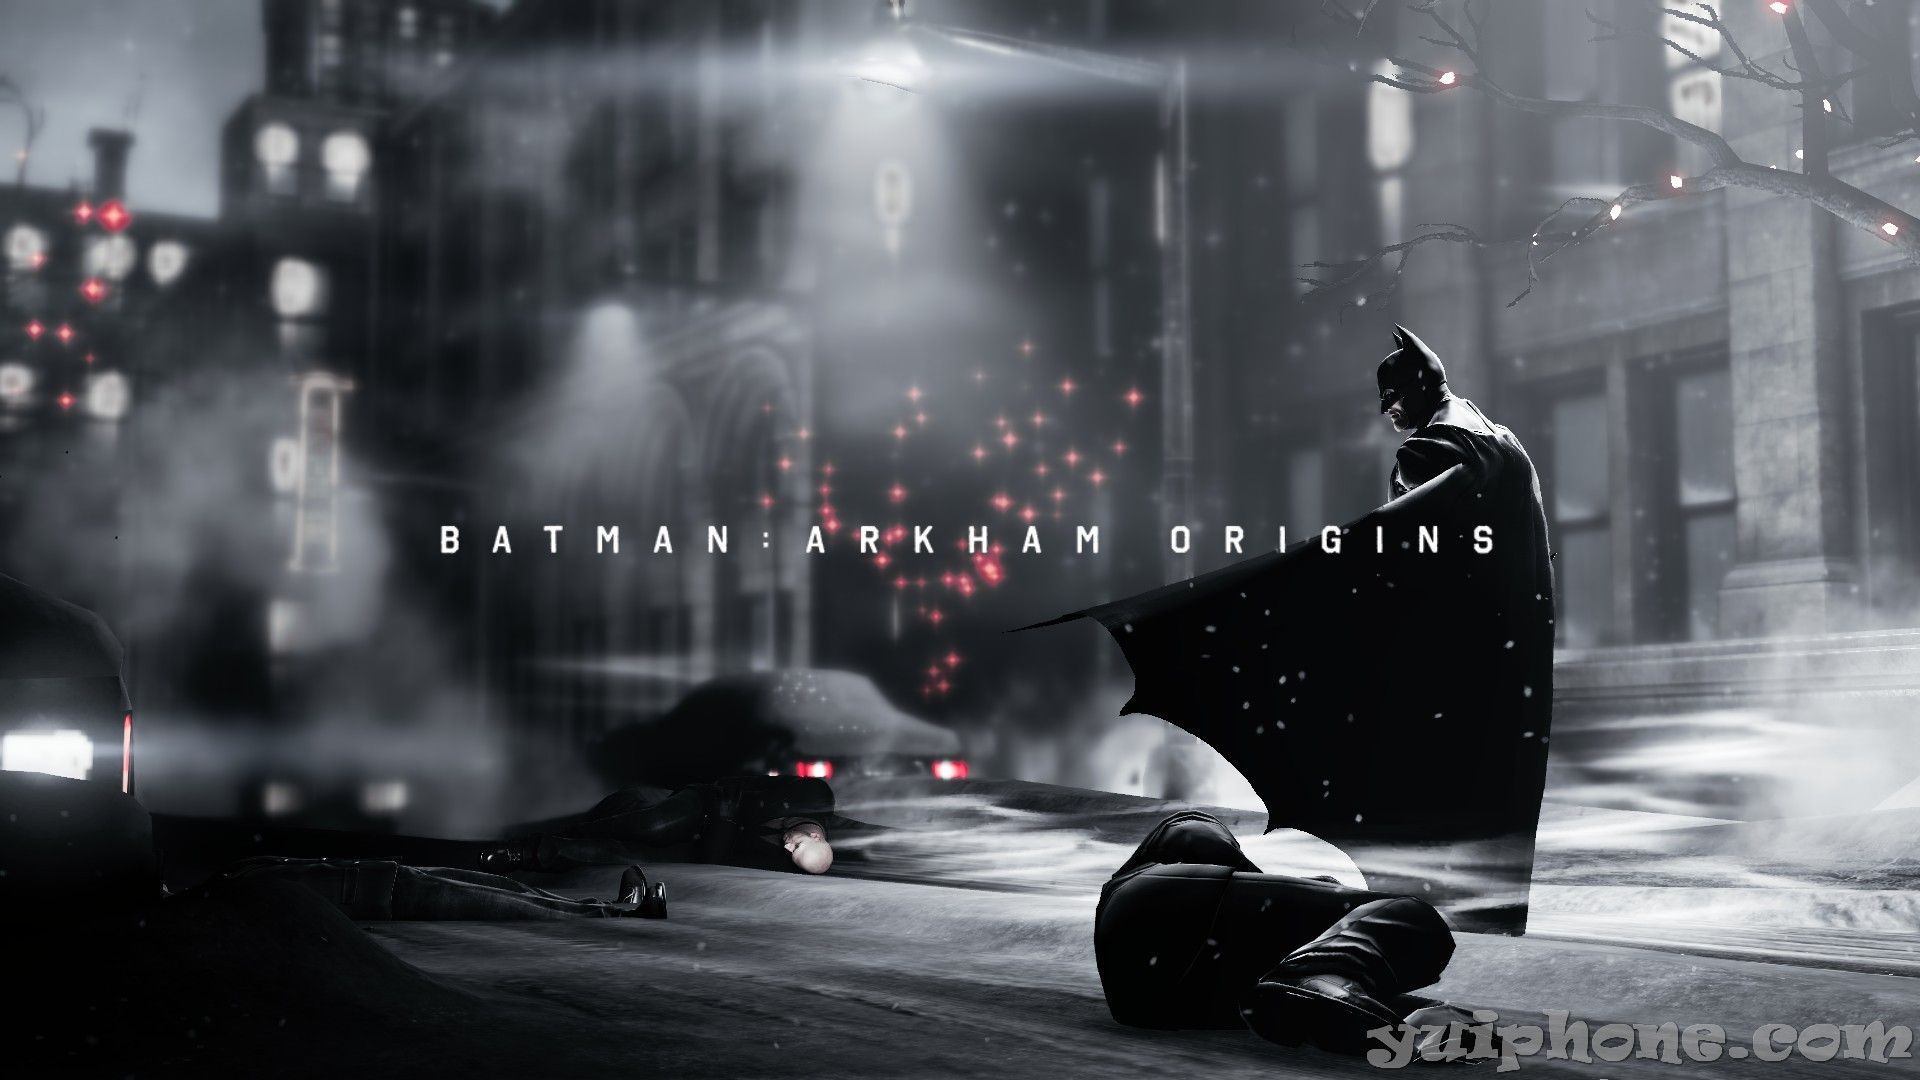 Batman: Arkham Origins Computer Wallpaper, Desktop Background 2048×1152 Batman Arkham Or. Batman arkham origins wallpaper, Batman arkham, Batman arkham origins